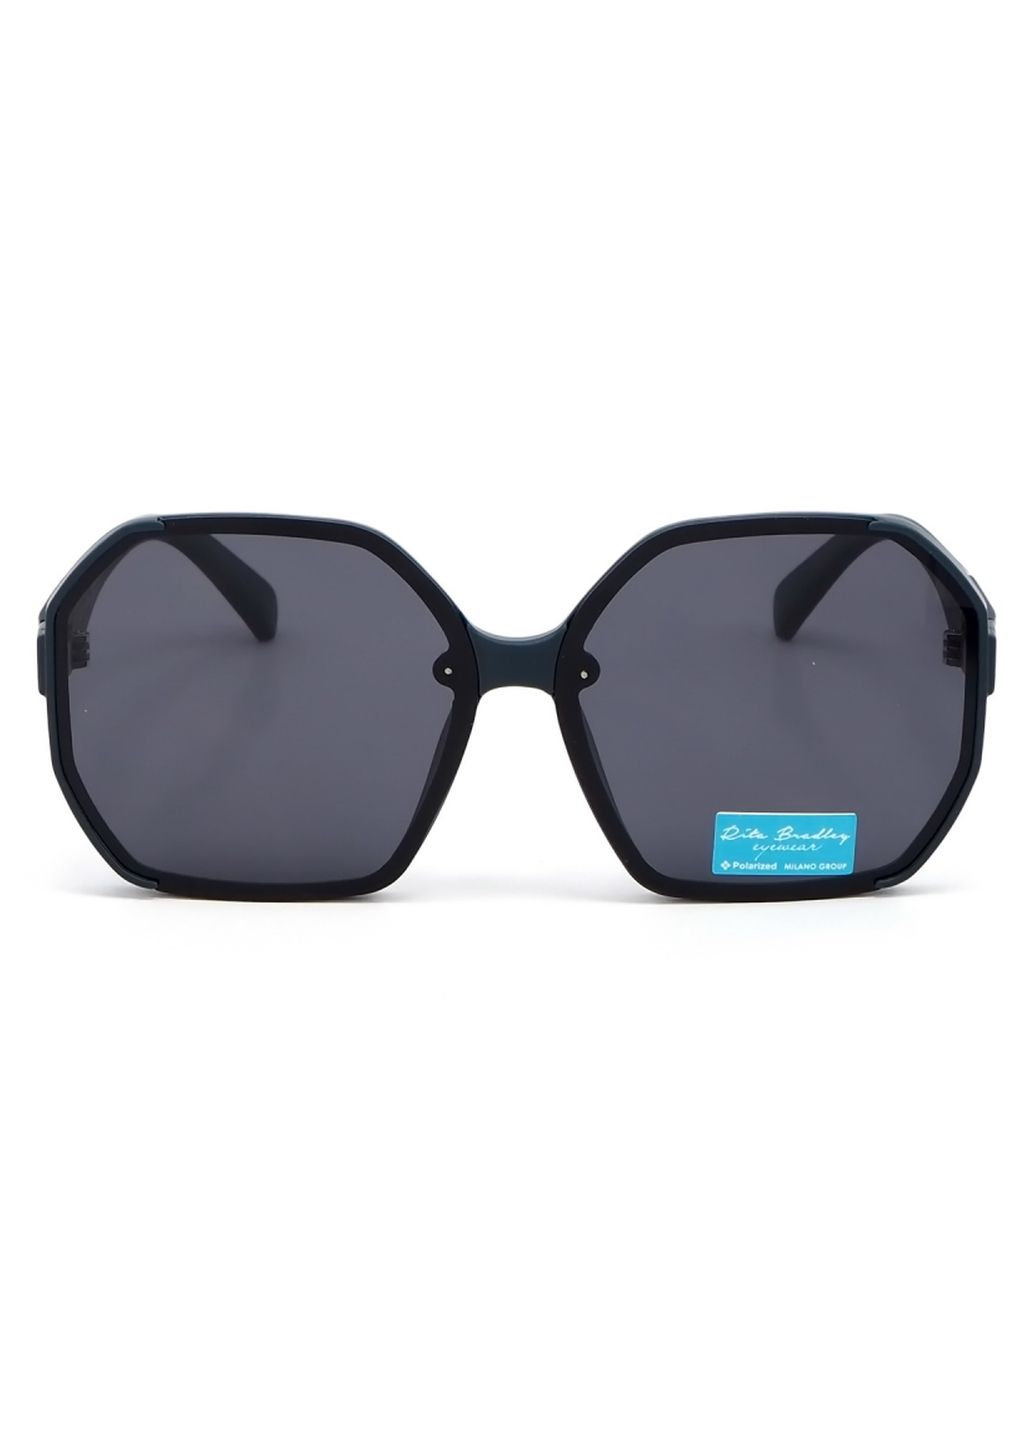 Купить Женские солнцезащитные очки Rita Bradley с поляризацией RB729 112069 в интернет-магазине